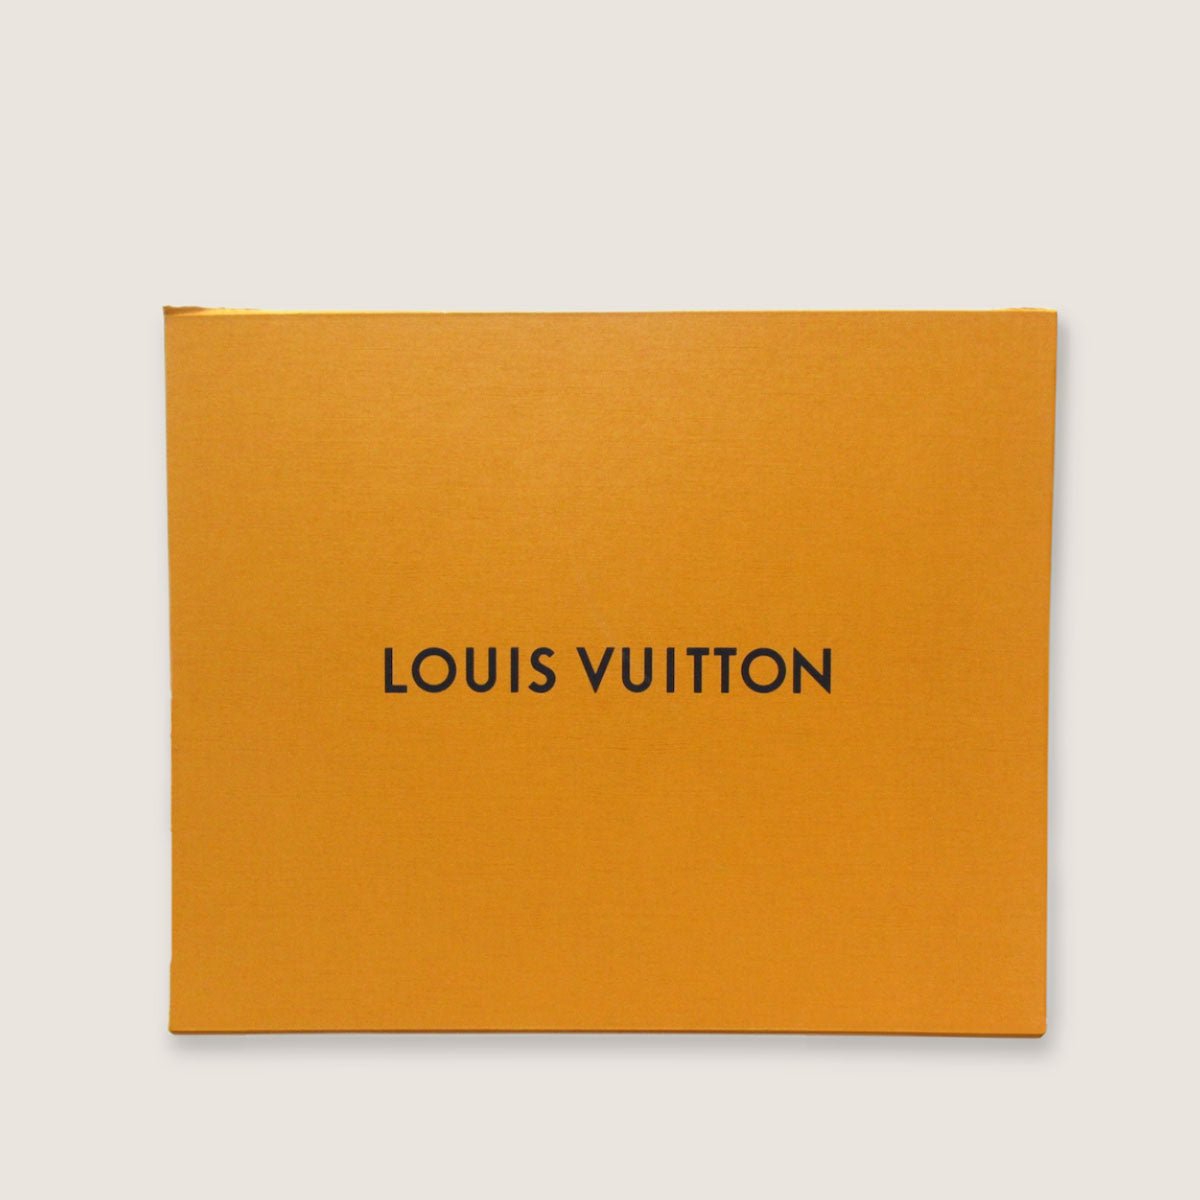 Neonoé Cherry Shoulder Bag - LOUIS VUITTON - Affordable Luxury image